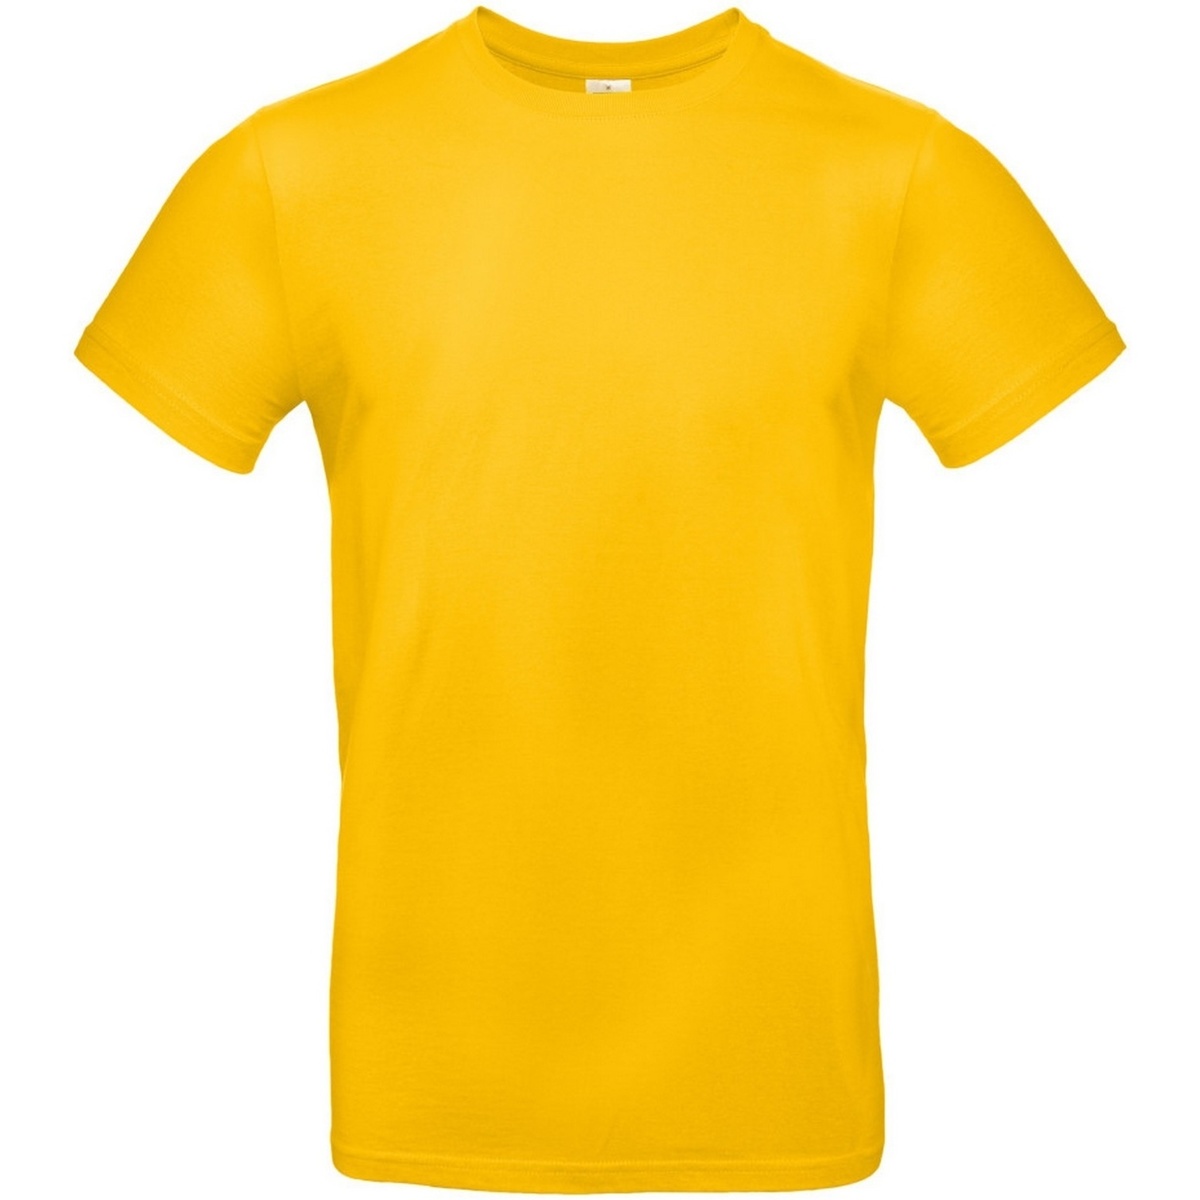 Vêtements Homme T-shirts manches longues B And C TU03T Multicolore